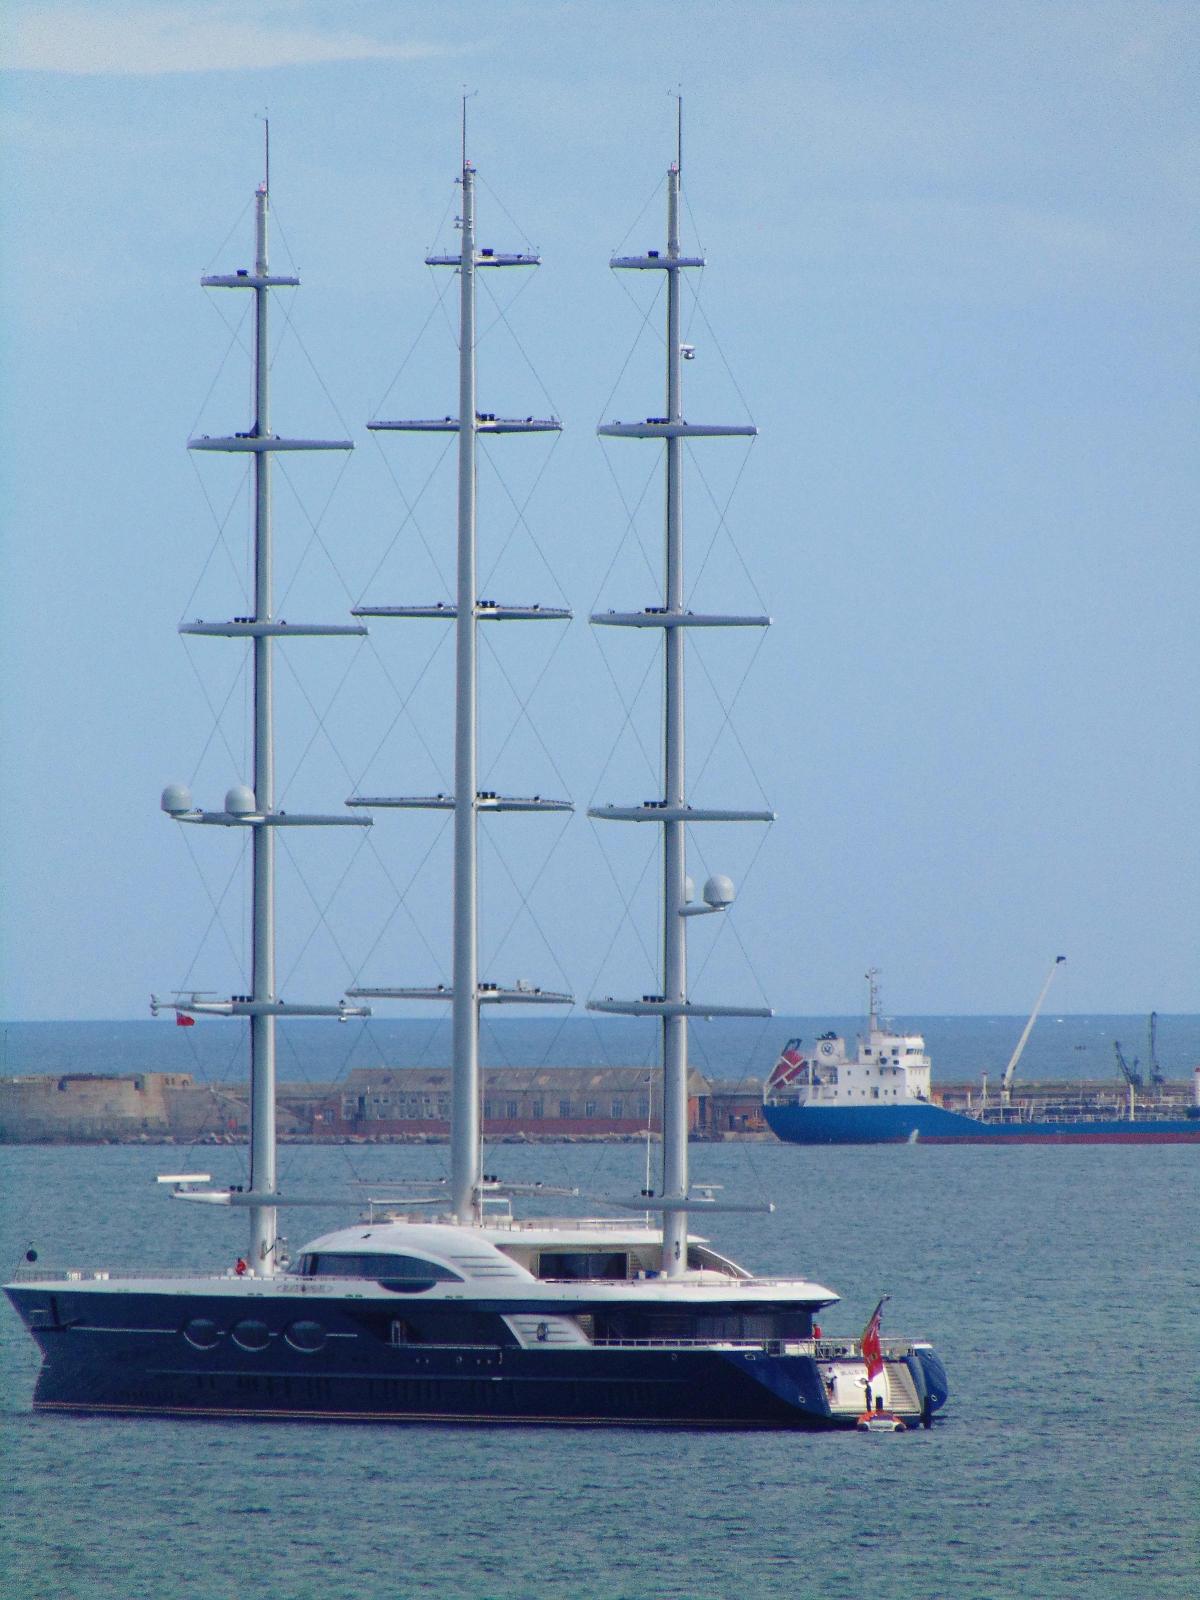 black pearl sailboat